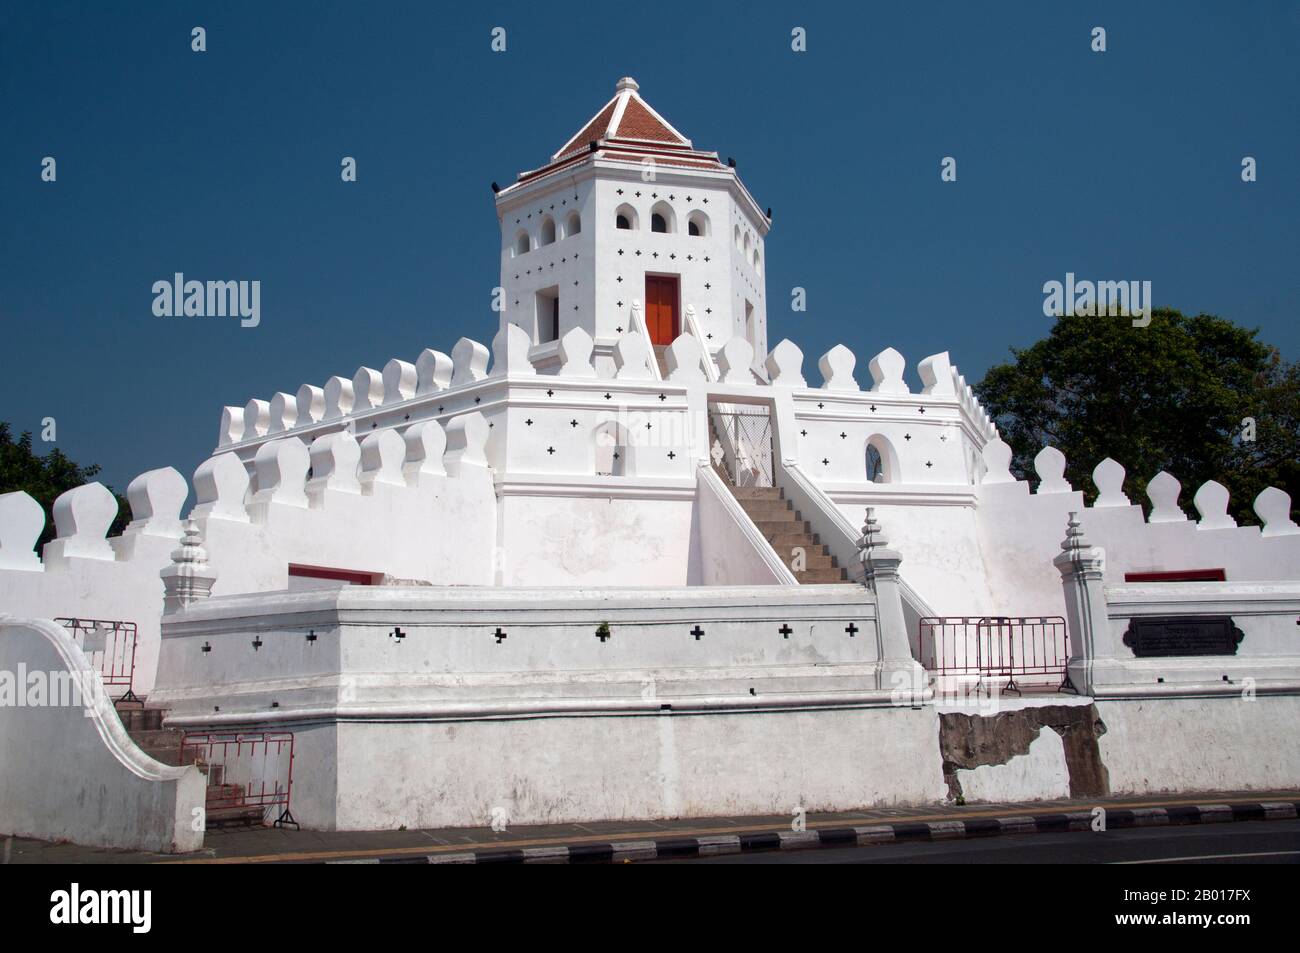 Thailand: Phra Sumen Fort, Santichaiprakarn Park, Banglamphu, Bangkok. Das Phra Sumen Fort wurde 1783 während der Herrschaft von König Buddha Yodfa Chulaloke (Rama I) errichtet. Es ist eine von 14 Festungen, die Bangkok einst schützten. Heute überleben nur zwei, Phra Sumen Fort und Fort Mahakan. Stockfoto